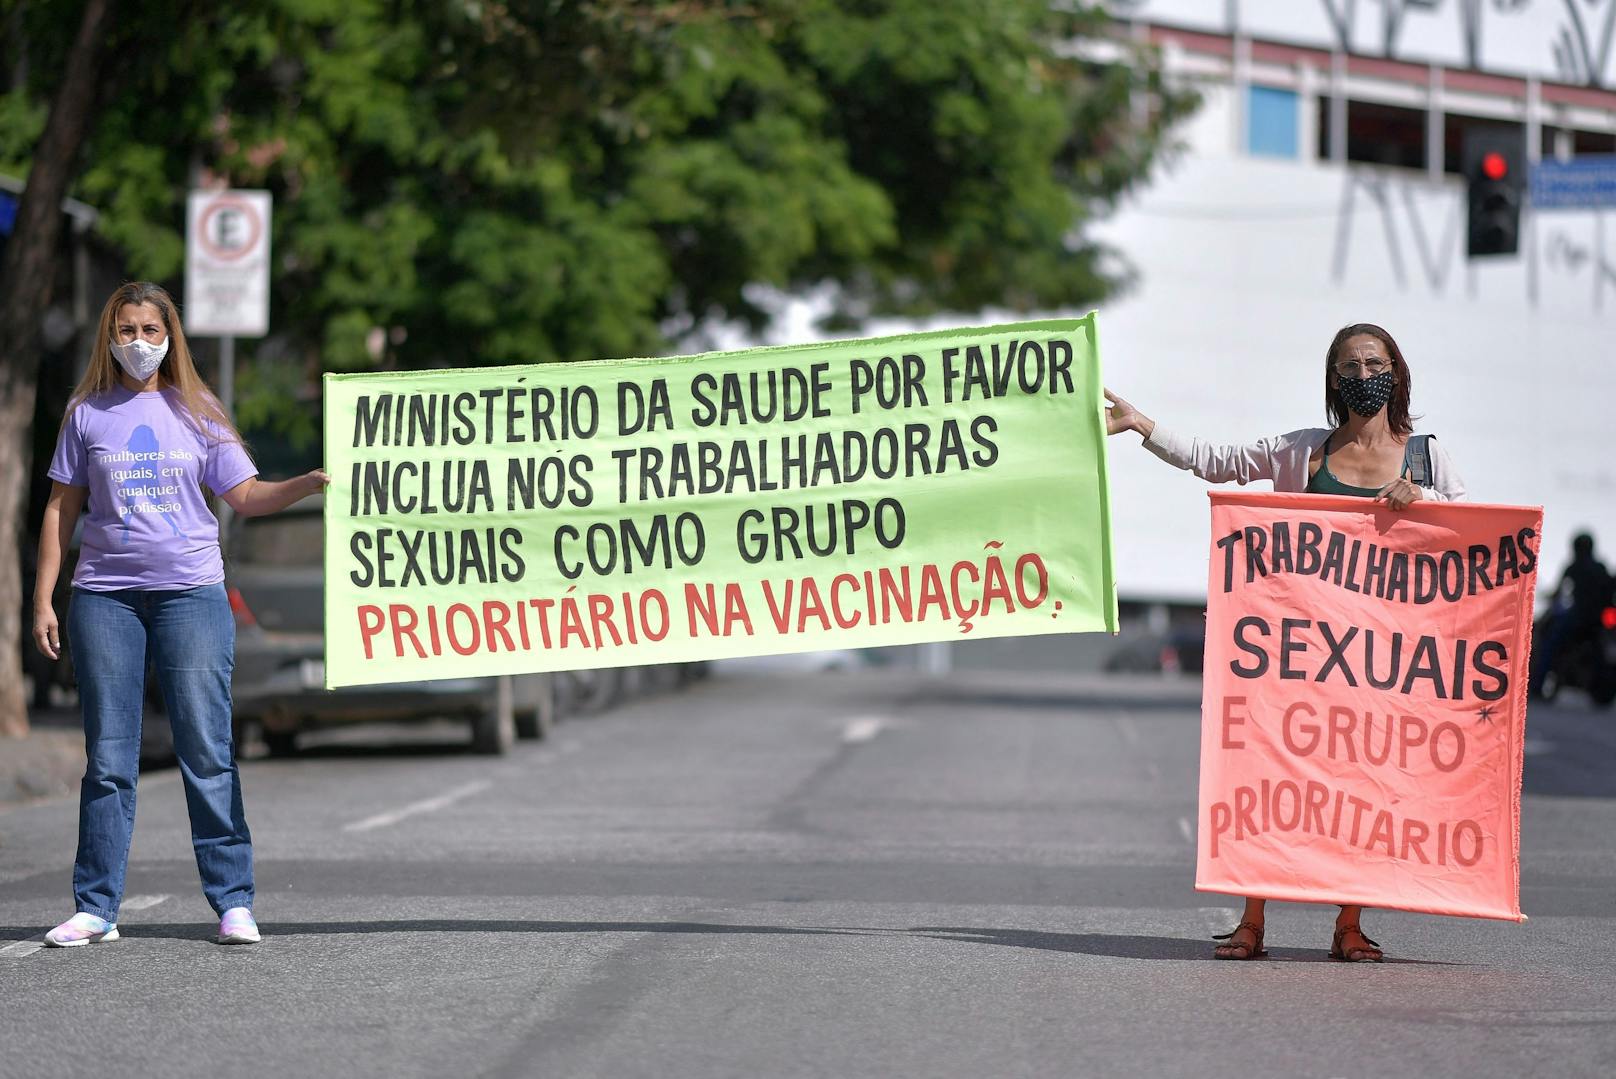 "Wir stehen an vorderster Front und sind gefährdet", sagt eine Sprecherin der Sexarbeiterinnen.